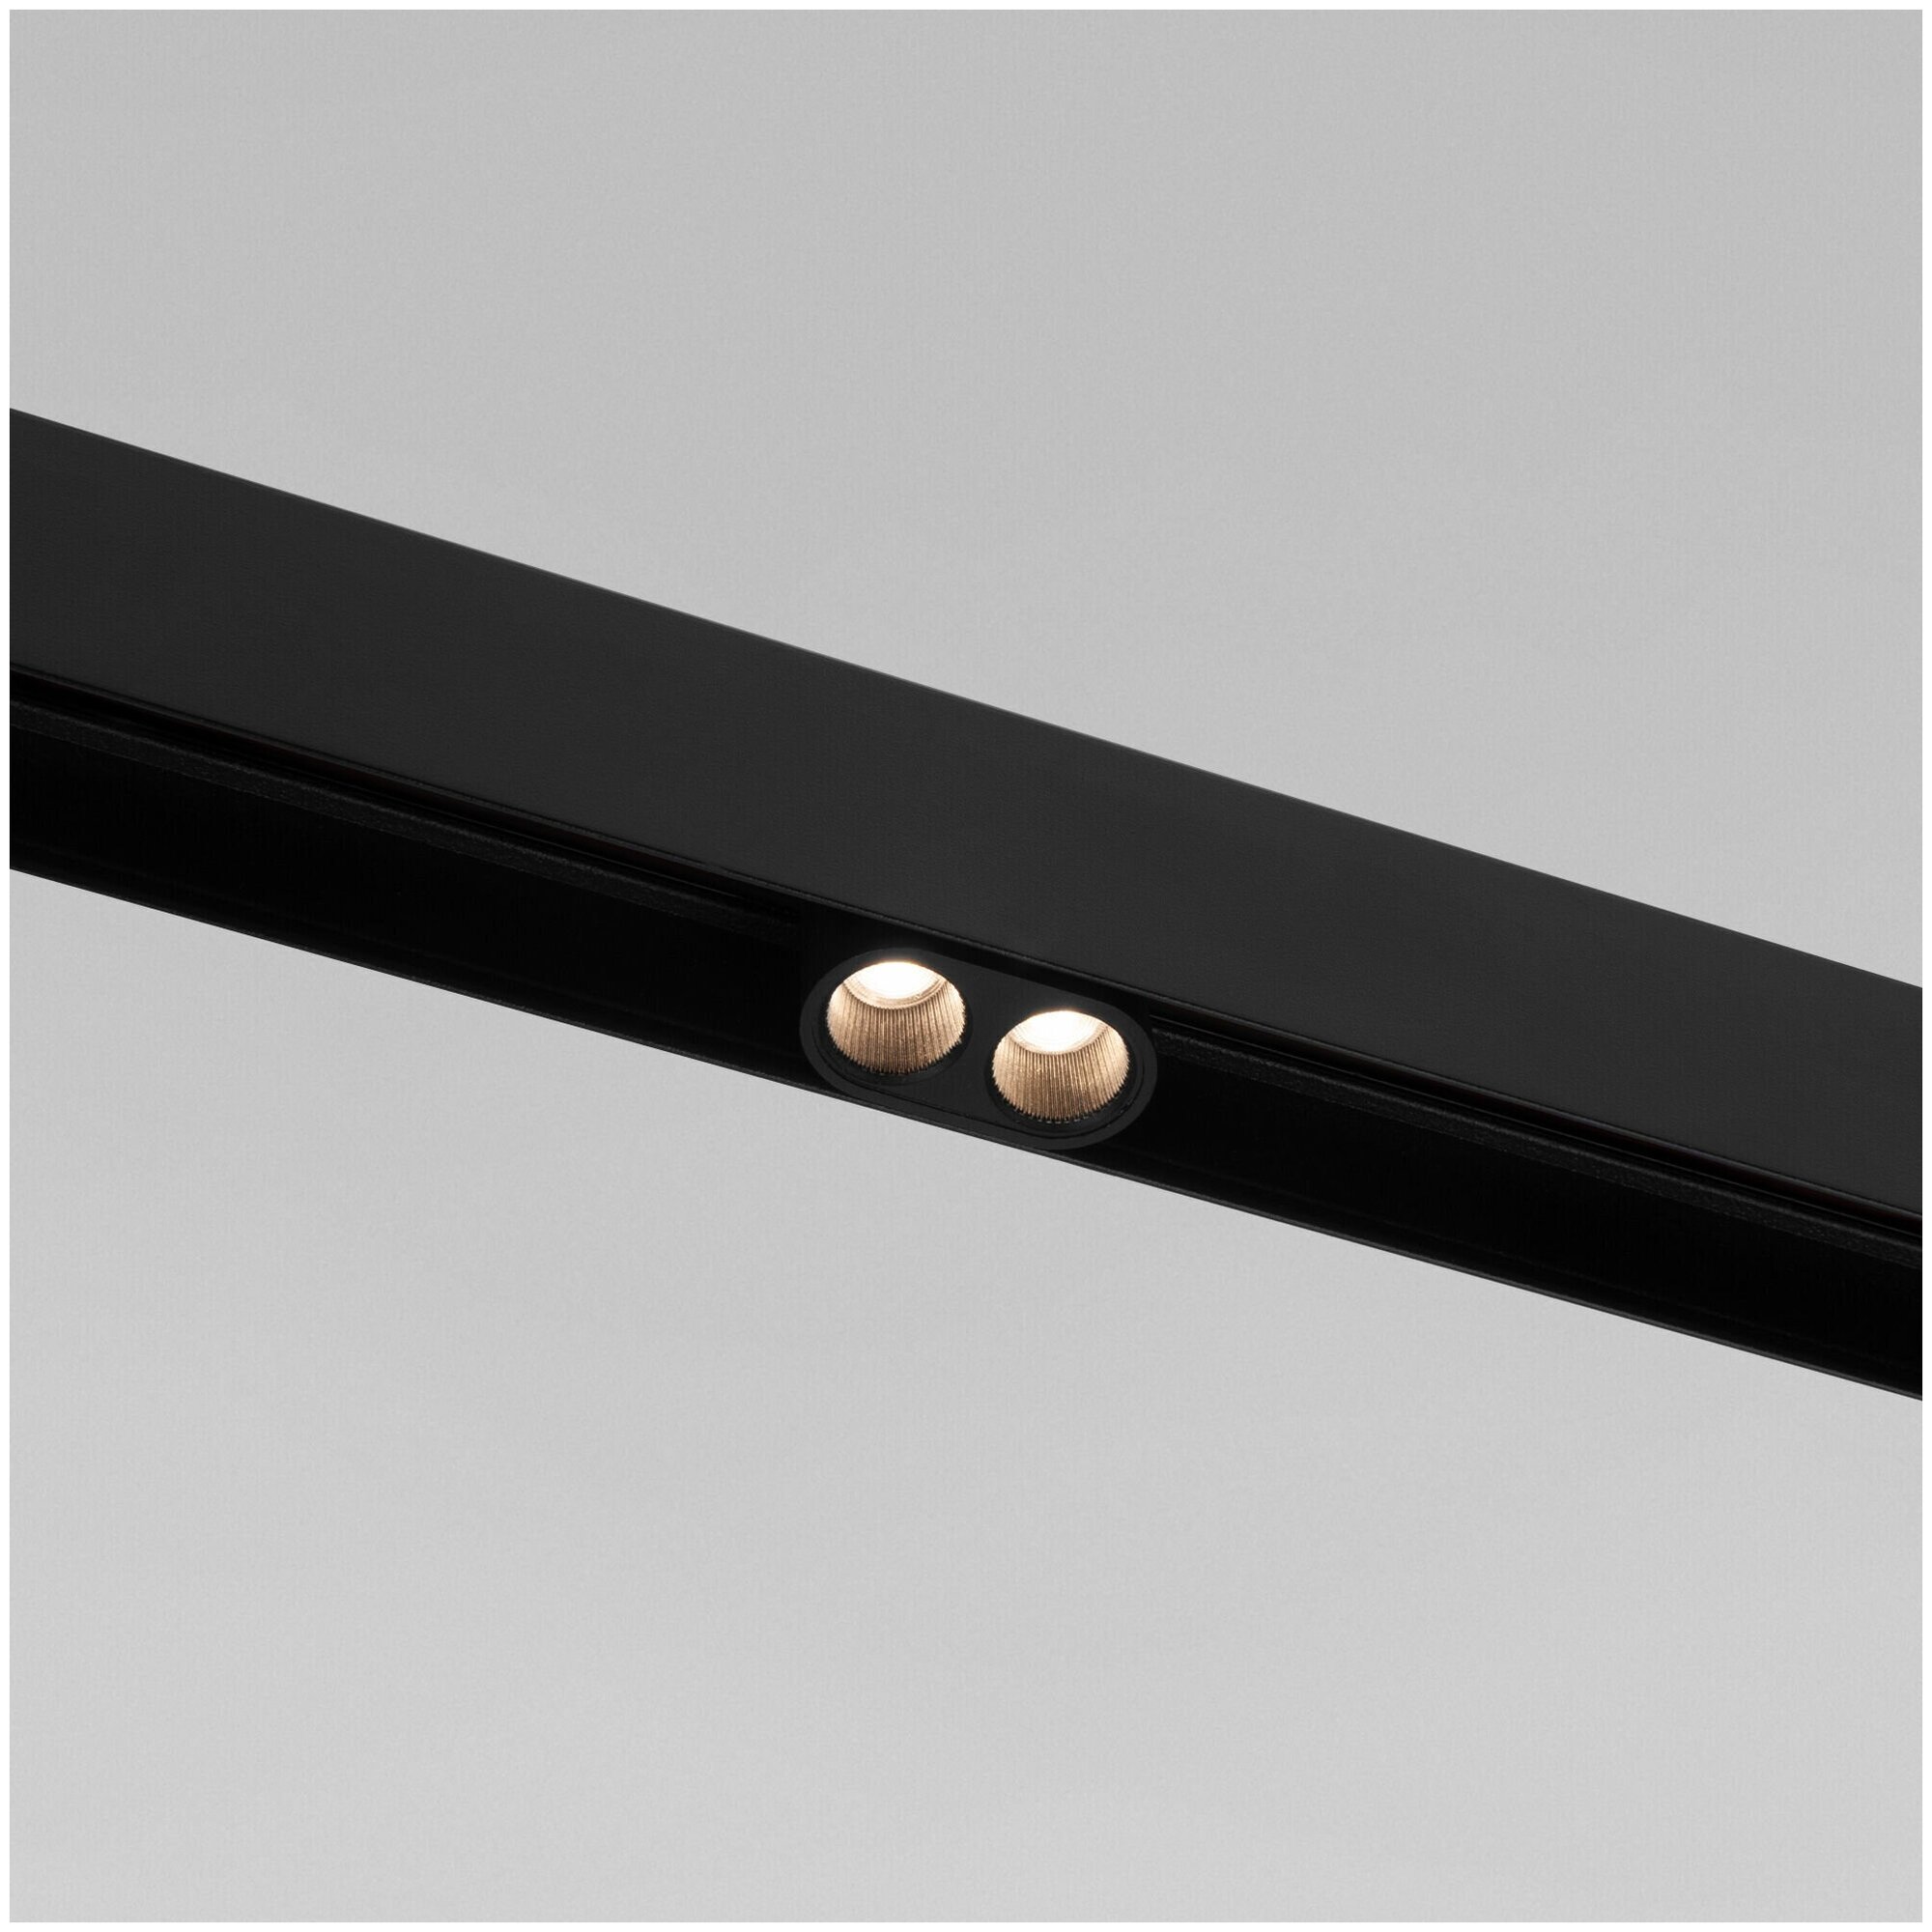 Трековый светодиодный светильник Elektrostandard Slim Magnetic Smally M02 85510/01, 4 Вт, 4200 K, цвет черный